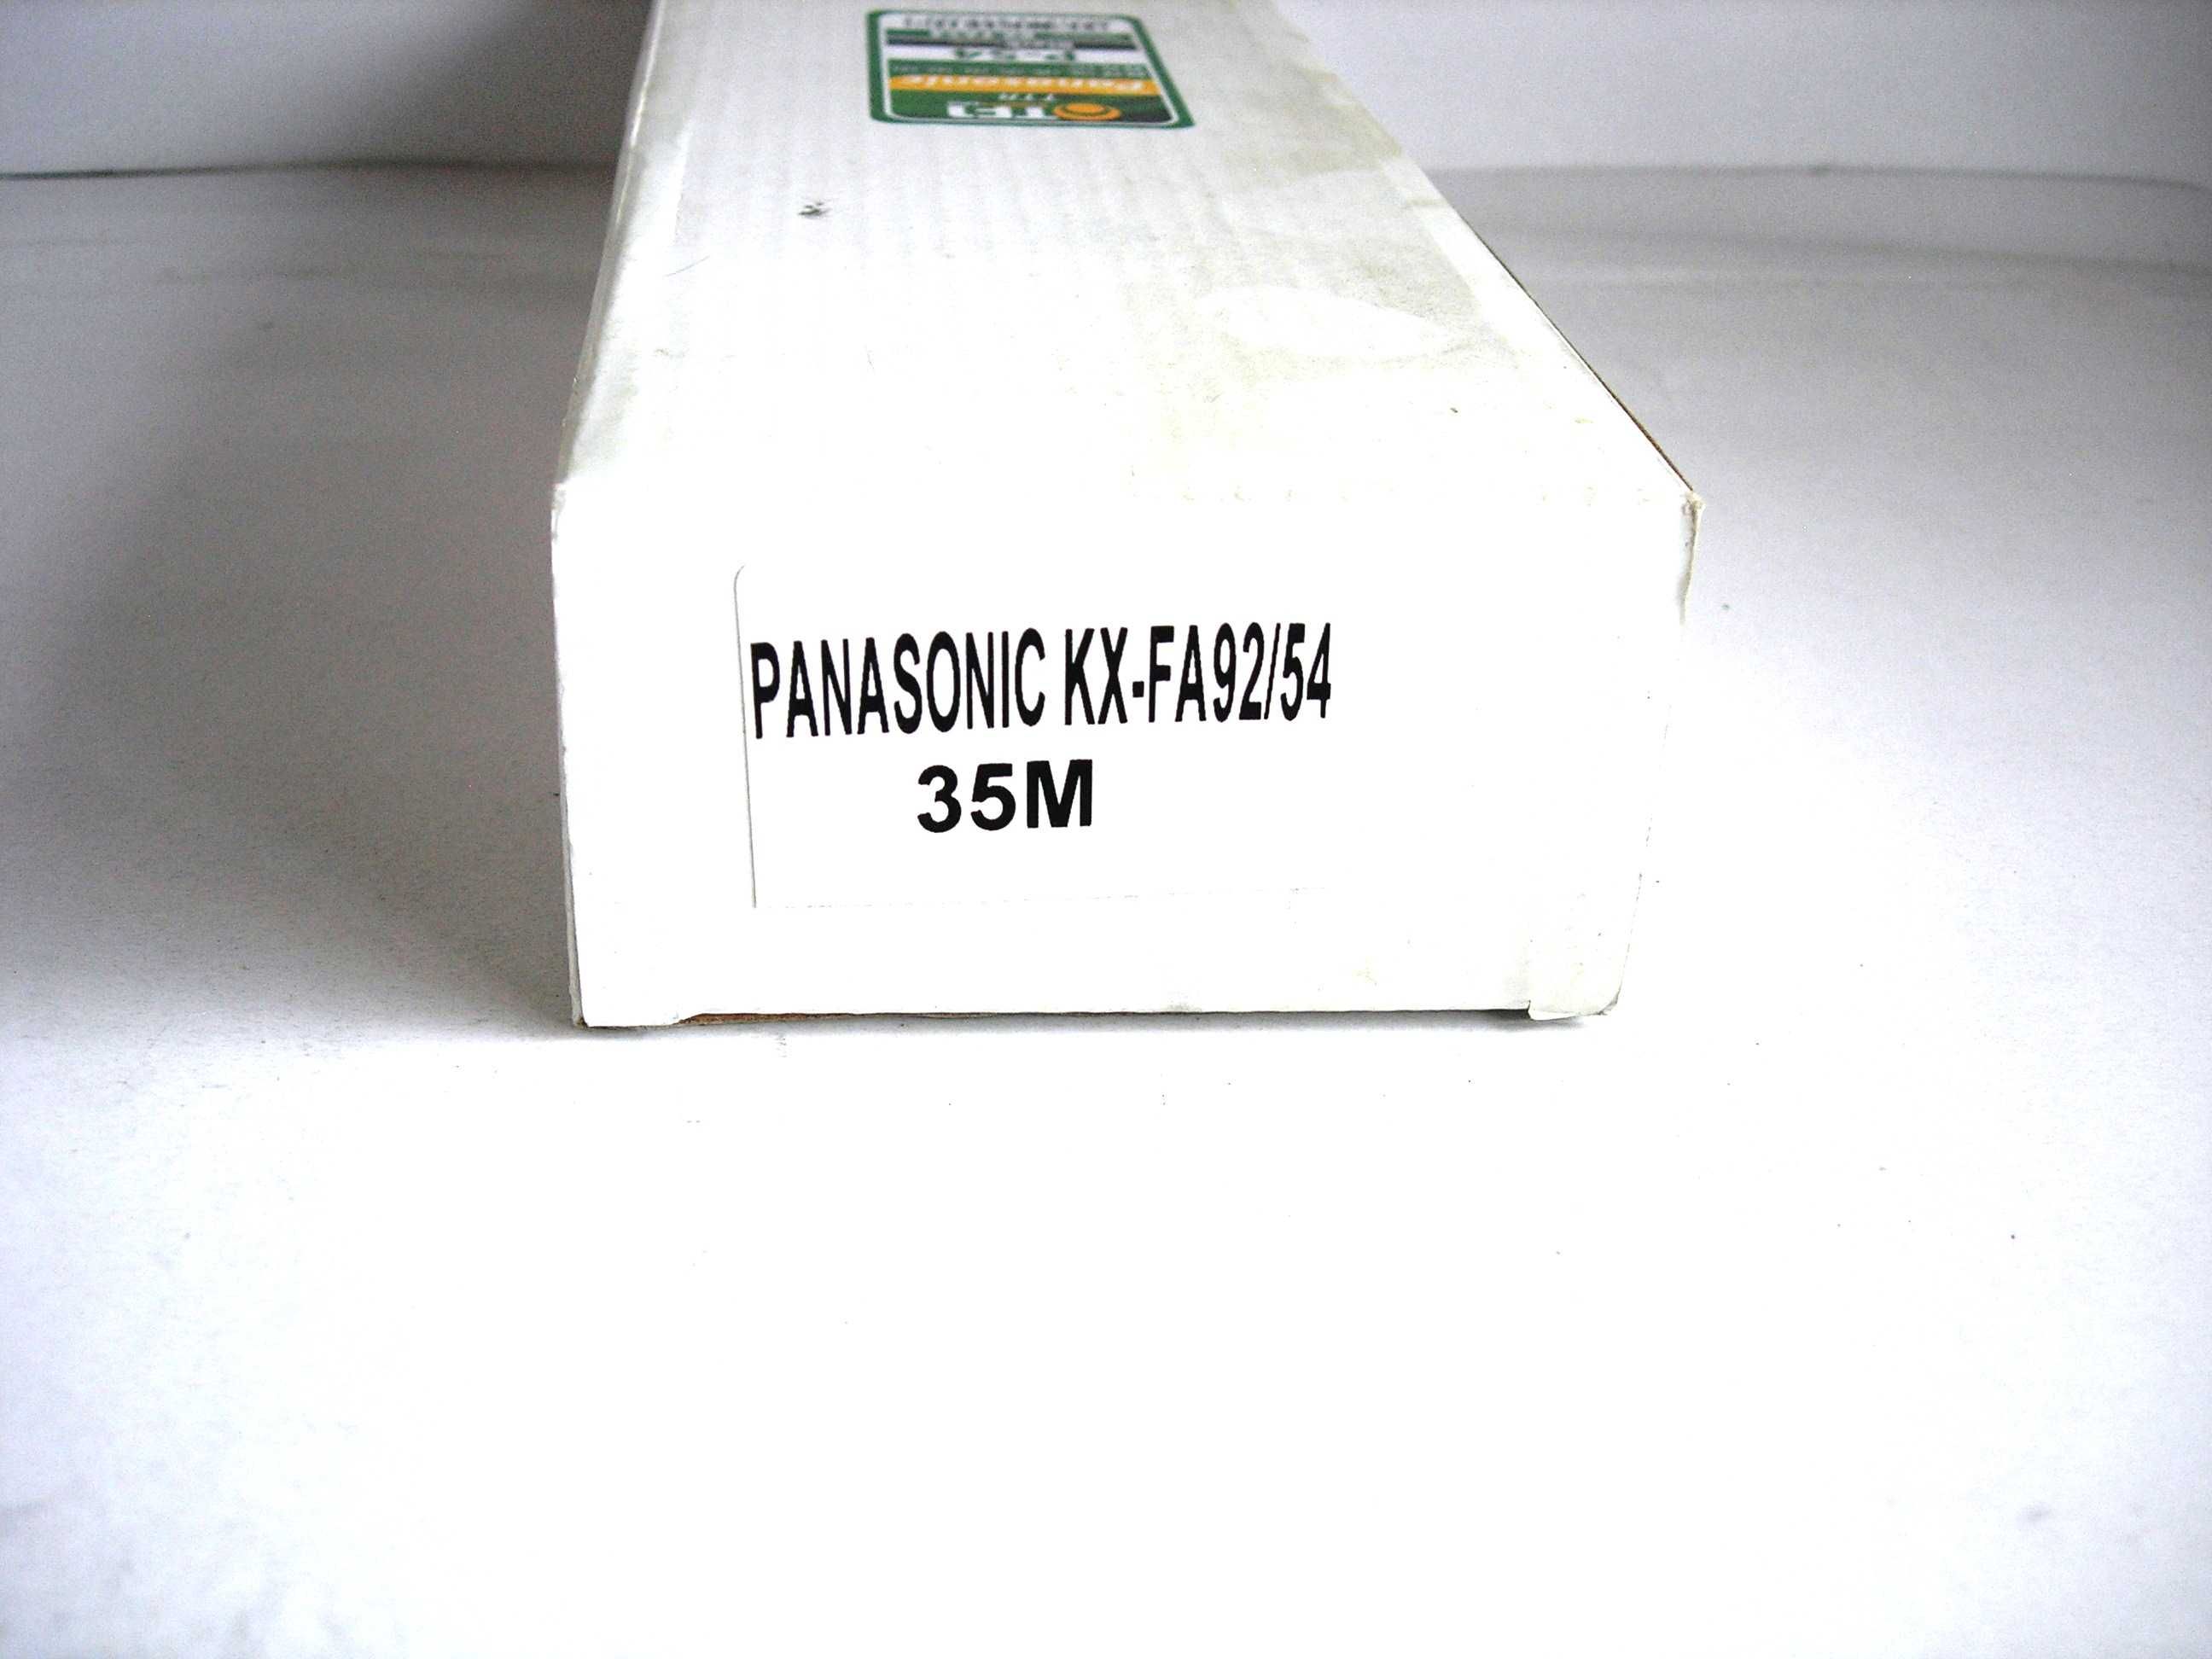 Folia do faxu Panasonic KX-FA54 zamiennik TF1 nowa 2 rolki